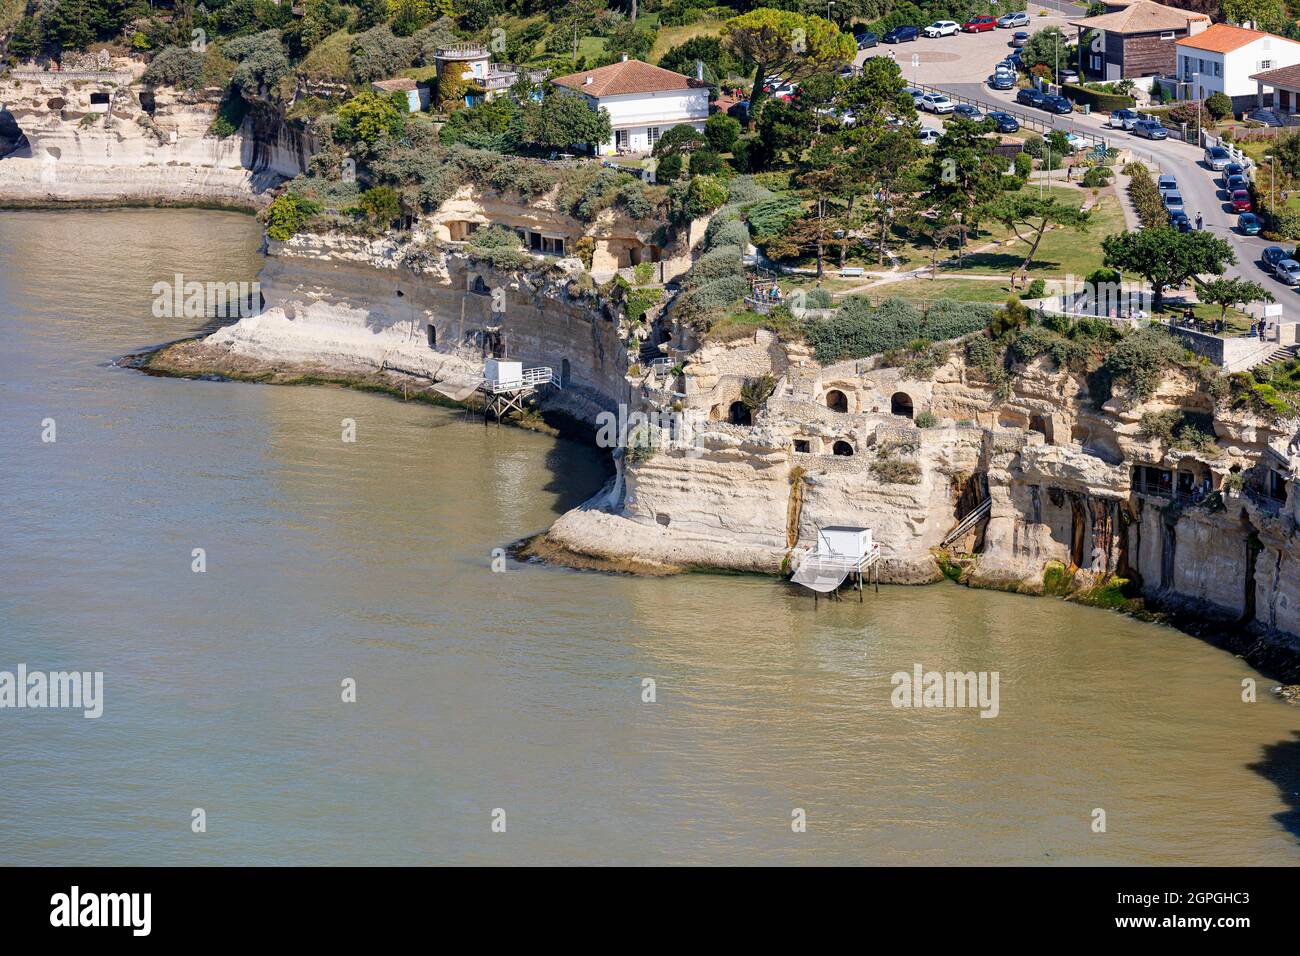 Francia, Charente Maritime, Meschers sur Gironde, case troglodite nella scogliera (vista aerea) Foto Stock